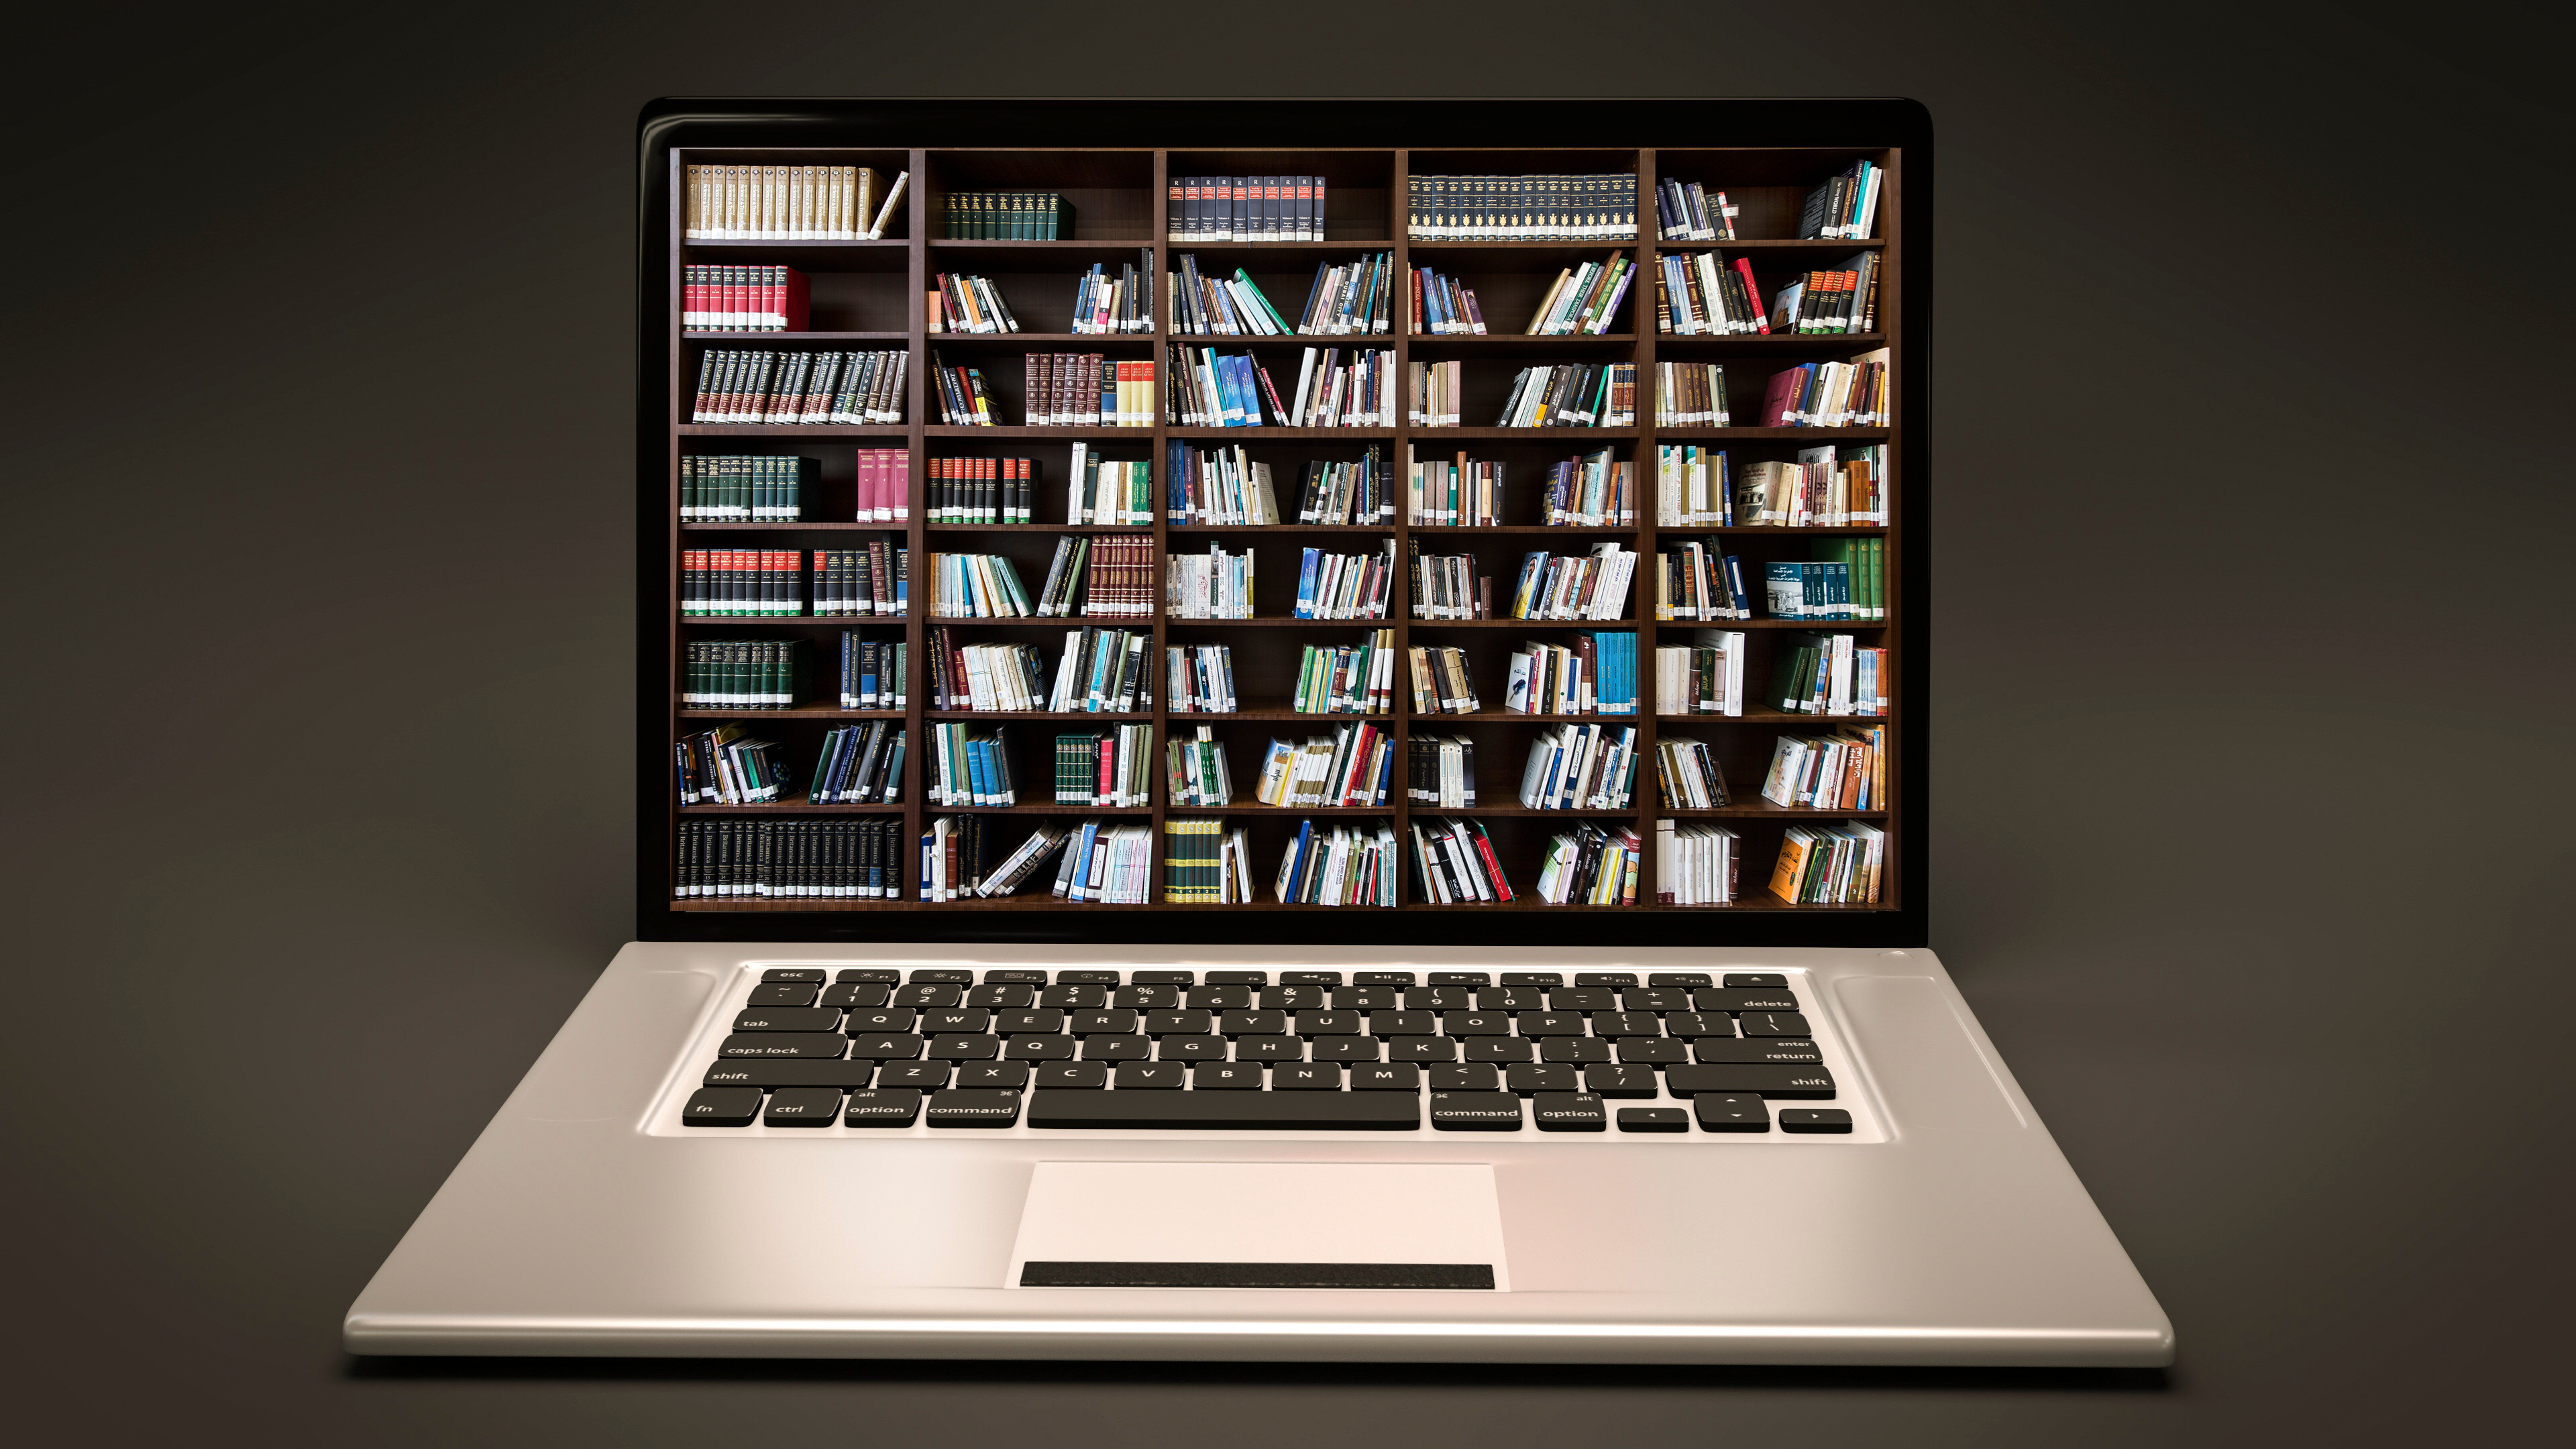 Примеры использования библиотек. Электронная библиотека. Интернет библиотека. Цифровая библиотека. Компьютер и книги.